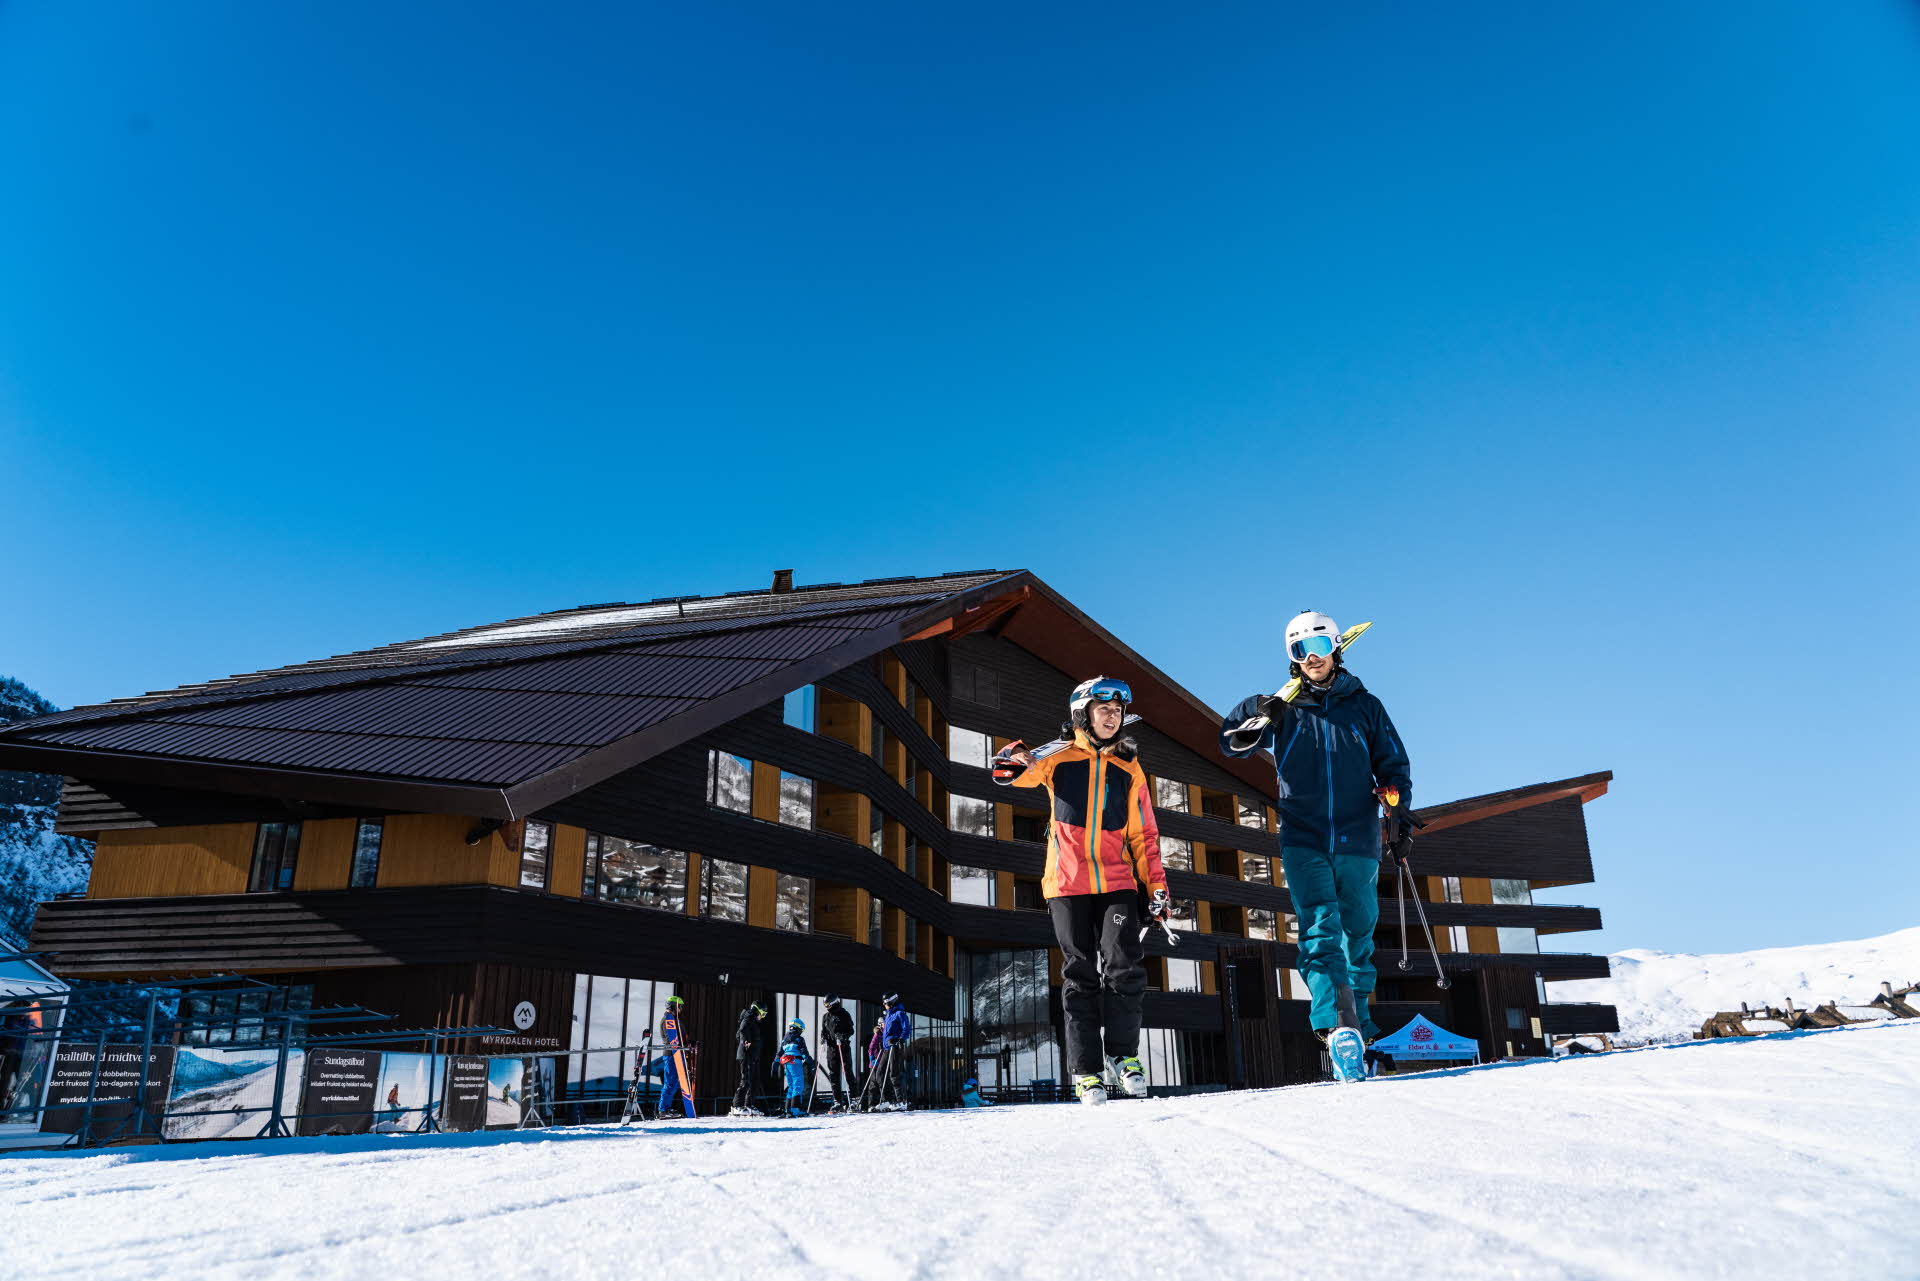 两名滑雪者拿着滑雪板，戴着滑雪头盔，走在迈克达林酒店 (Myrkdalen Hotel) 前的斜坡上。